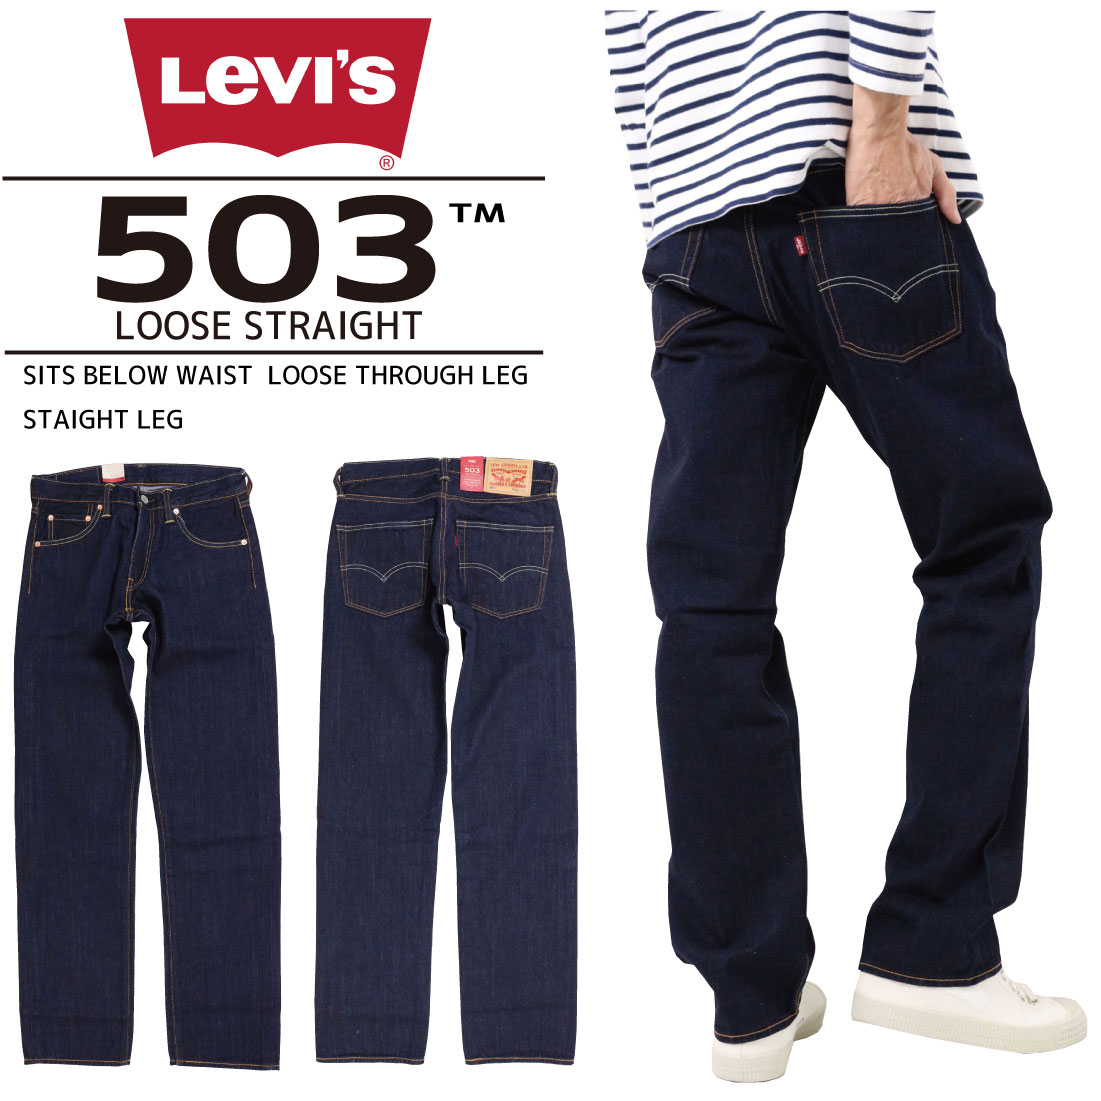 503 levi jeans